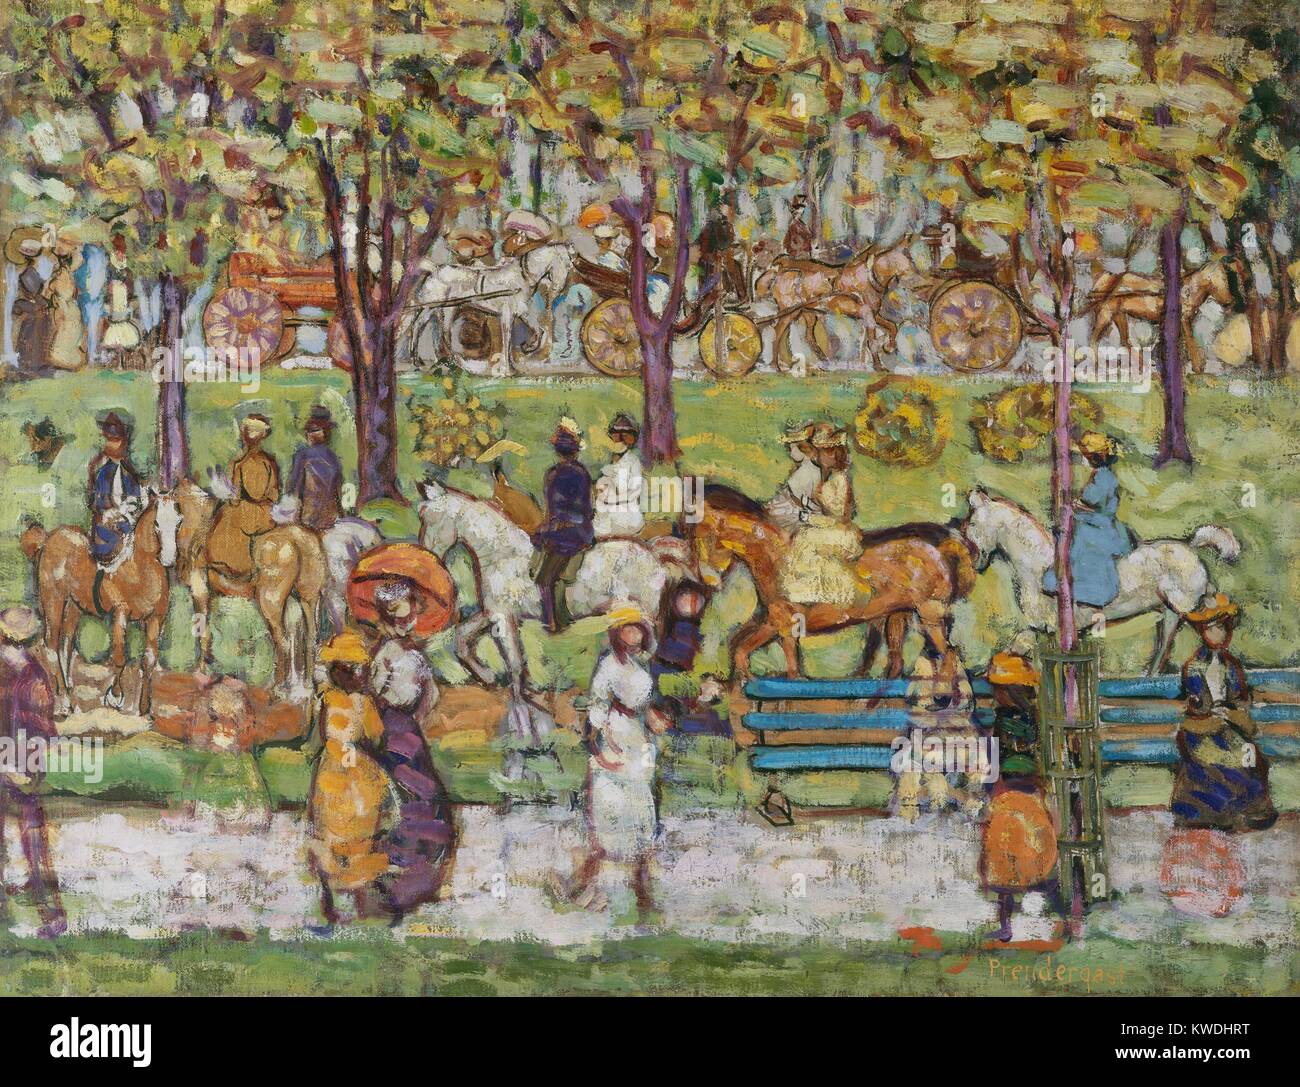 CENTRAL PARK, von Maurice Brazil Prendergast, 1914-15, Kanadisch-Gemälde, Öl auf Leinwand. Dies ist ein Klassiker der Künstler und persönlichen Stil. Das Thema ist eine moderne, urbane Szene der Erholung, in dem die Zahlen in Bändern angeordnet sind, und die Farbe ist rhythmisch über die Leinwand (BSLOC 2017 7 151) Stockfoto